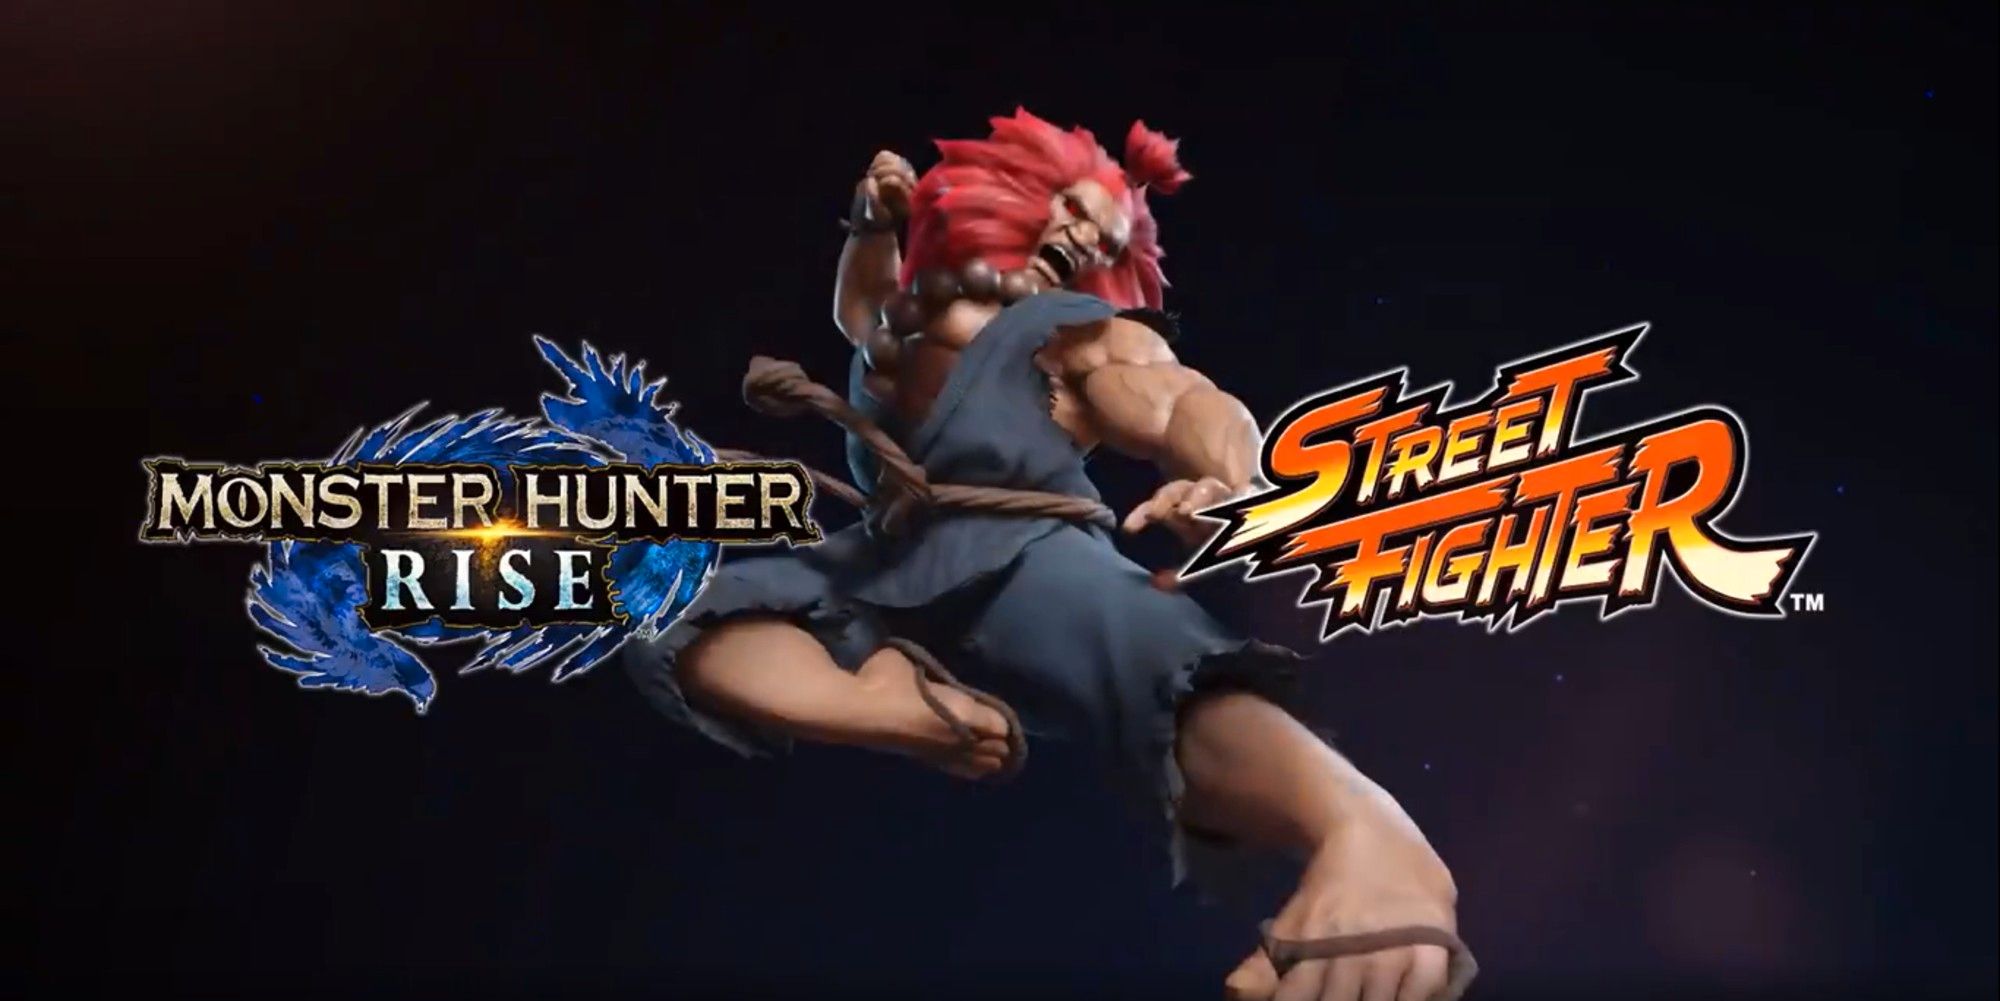 Monster Hunter Rise Akuma Street Fighter